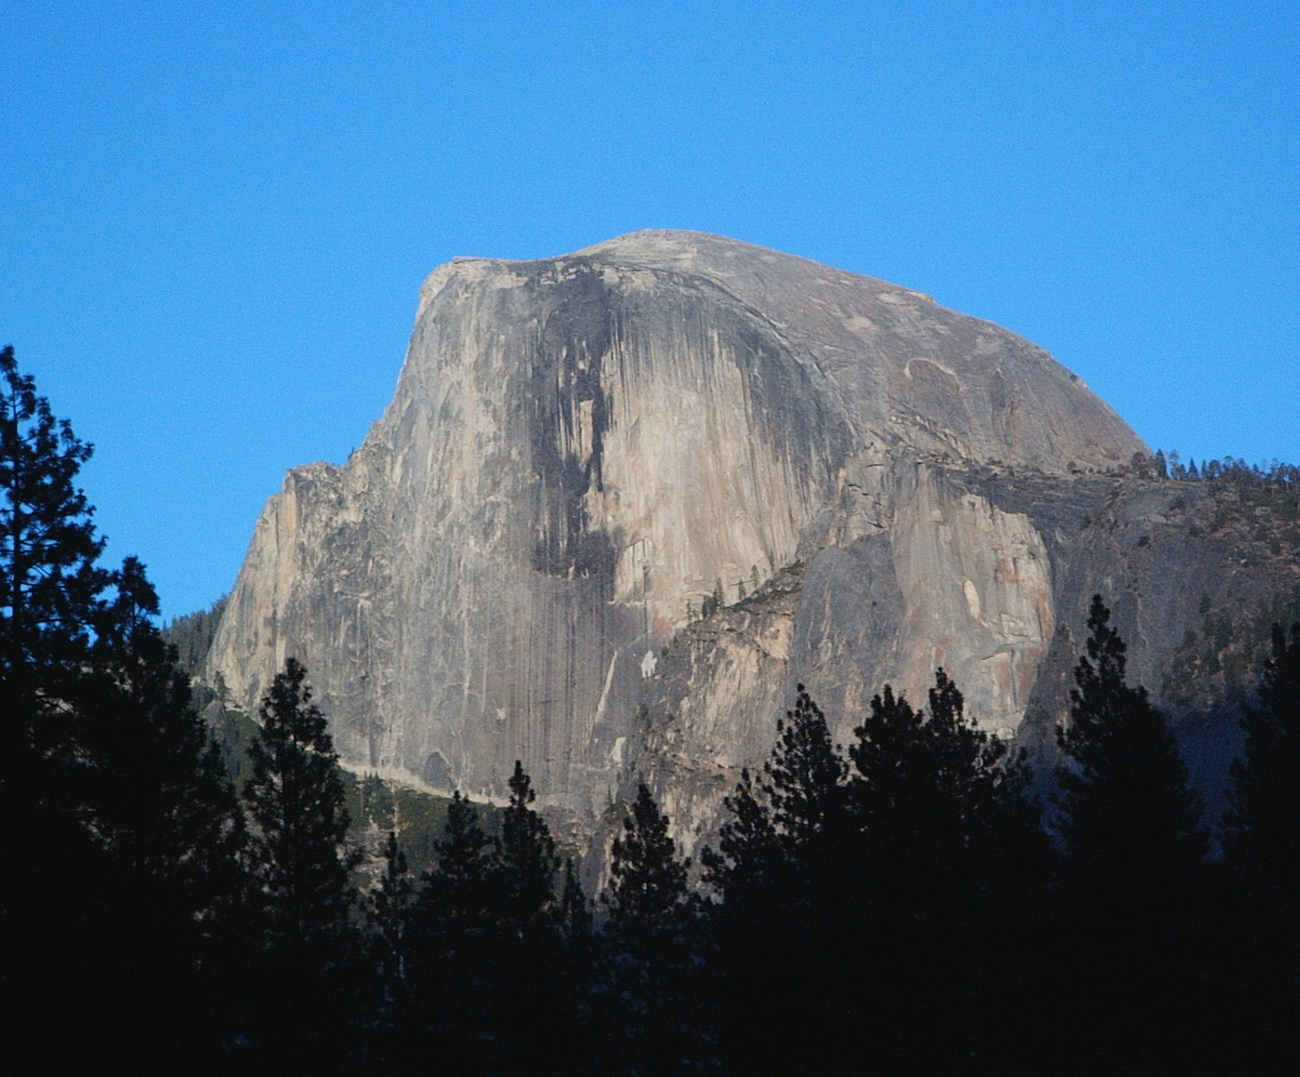 Big Wall at Yosemite